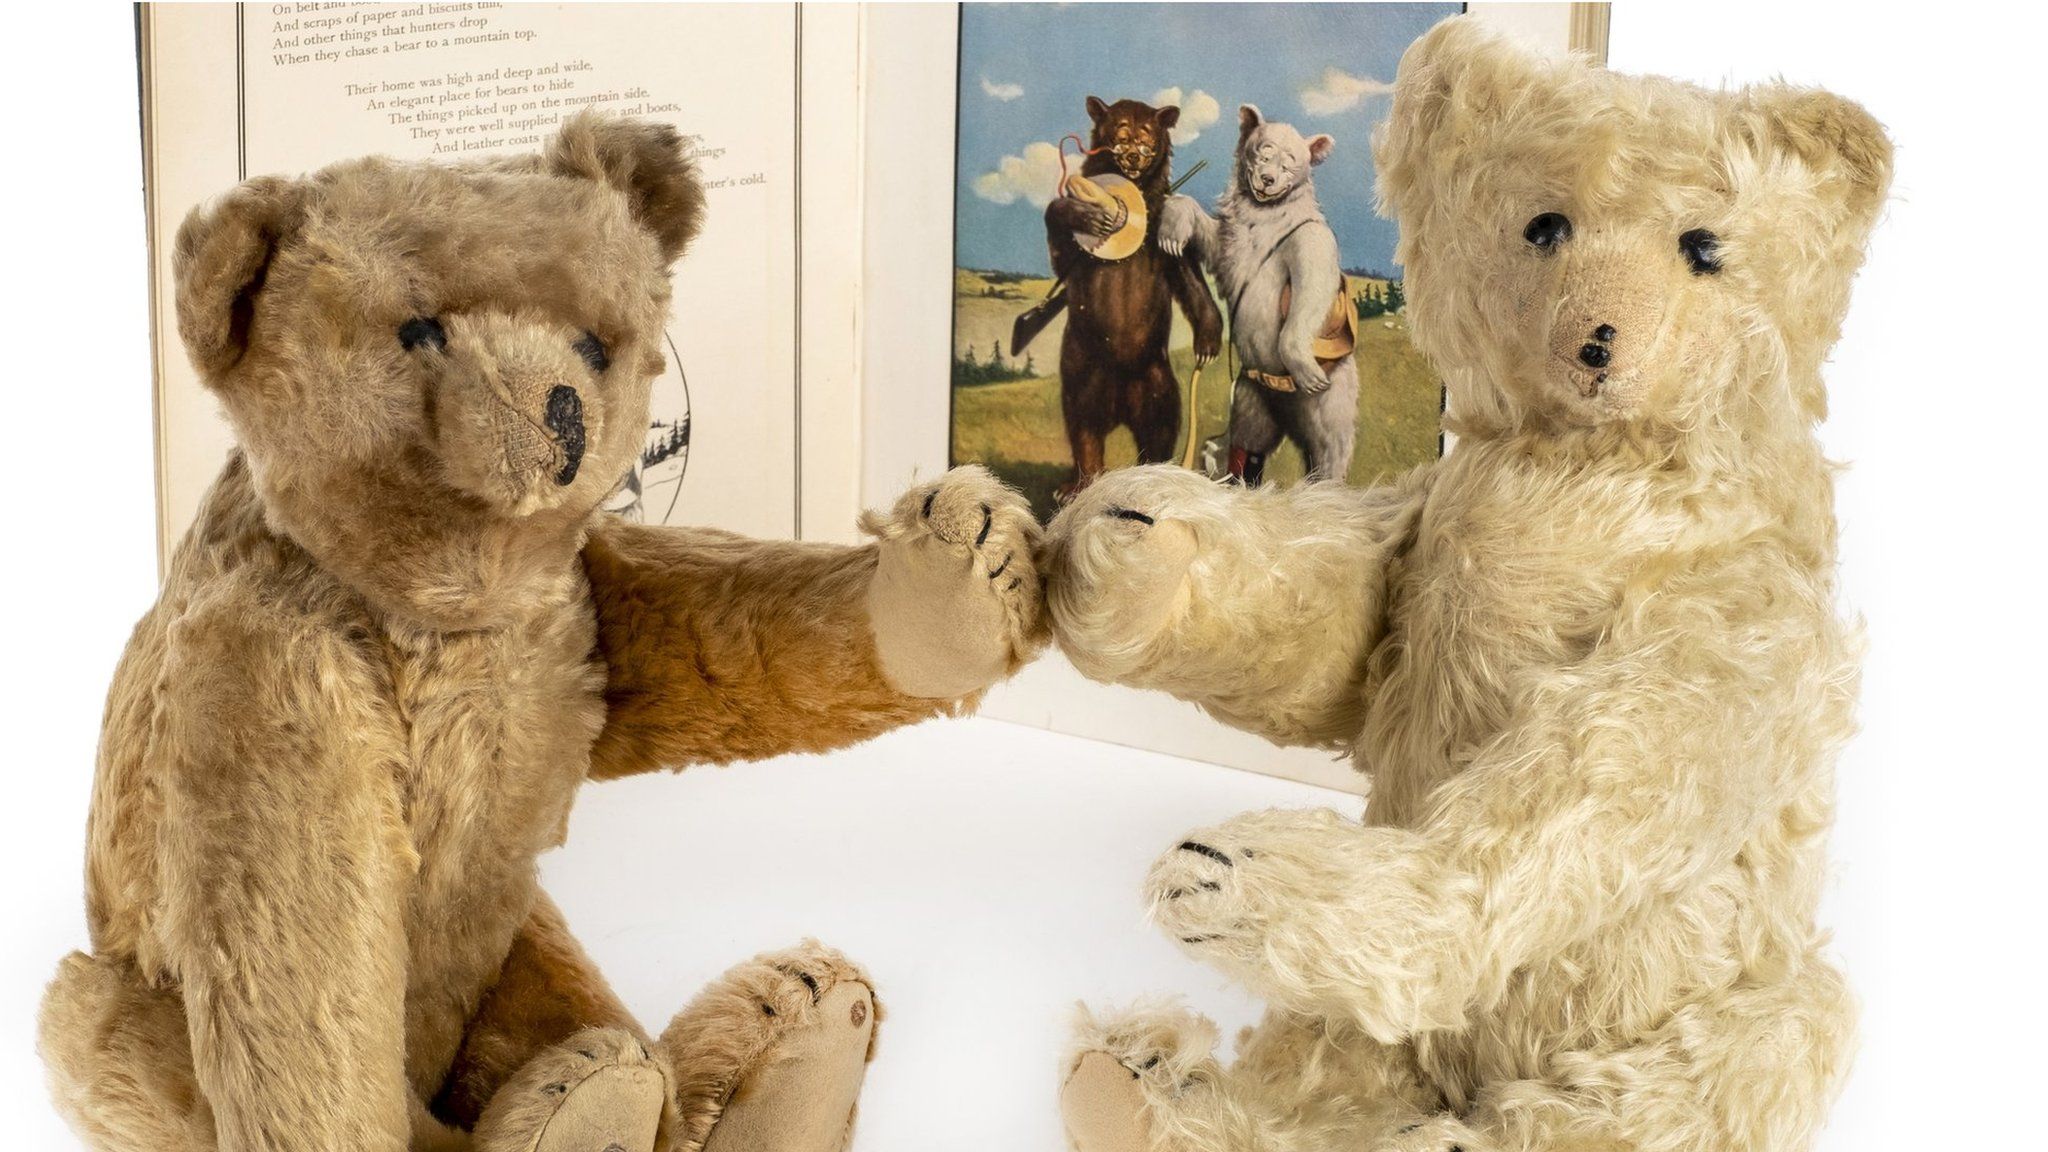 steiff teddy bears for sale